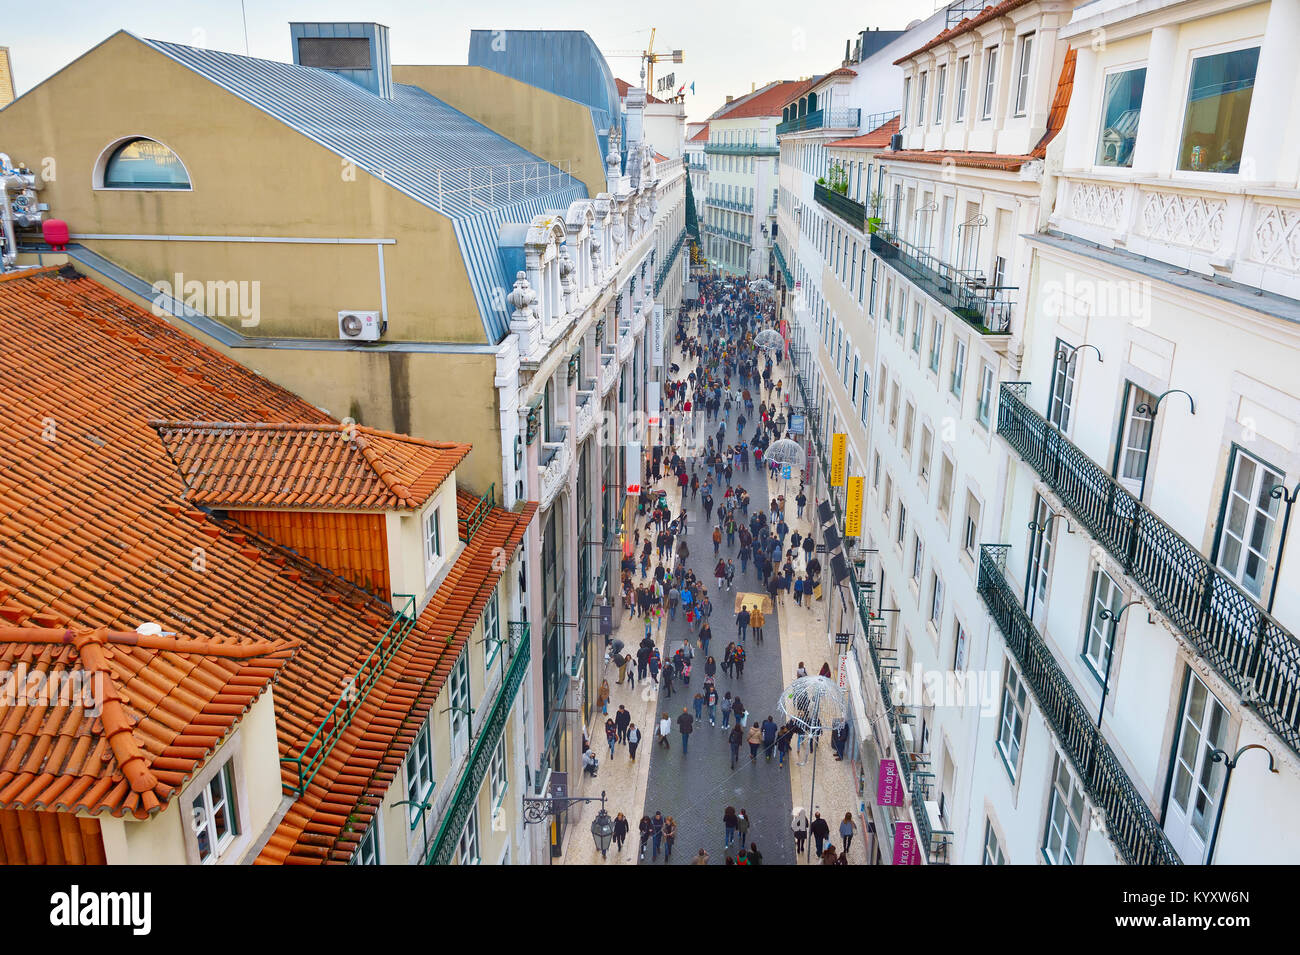 Lisbona, Portogallo - Dicembre 08, 2016: vista dalla cima di Santa Justa Elevator di Rua do Carmo, la strada dello shopping di Lisbona con la gente camminare lungo th Foto Stock